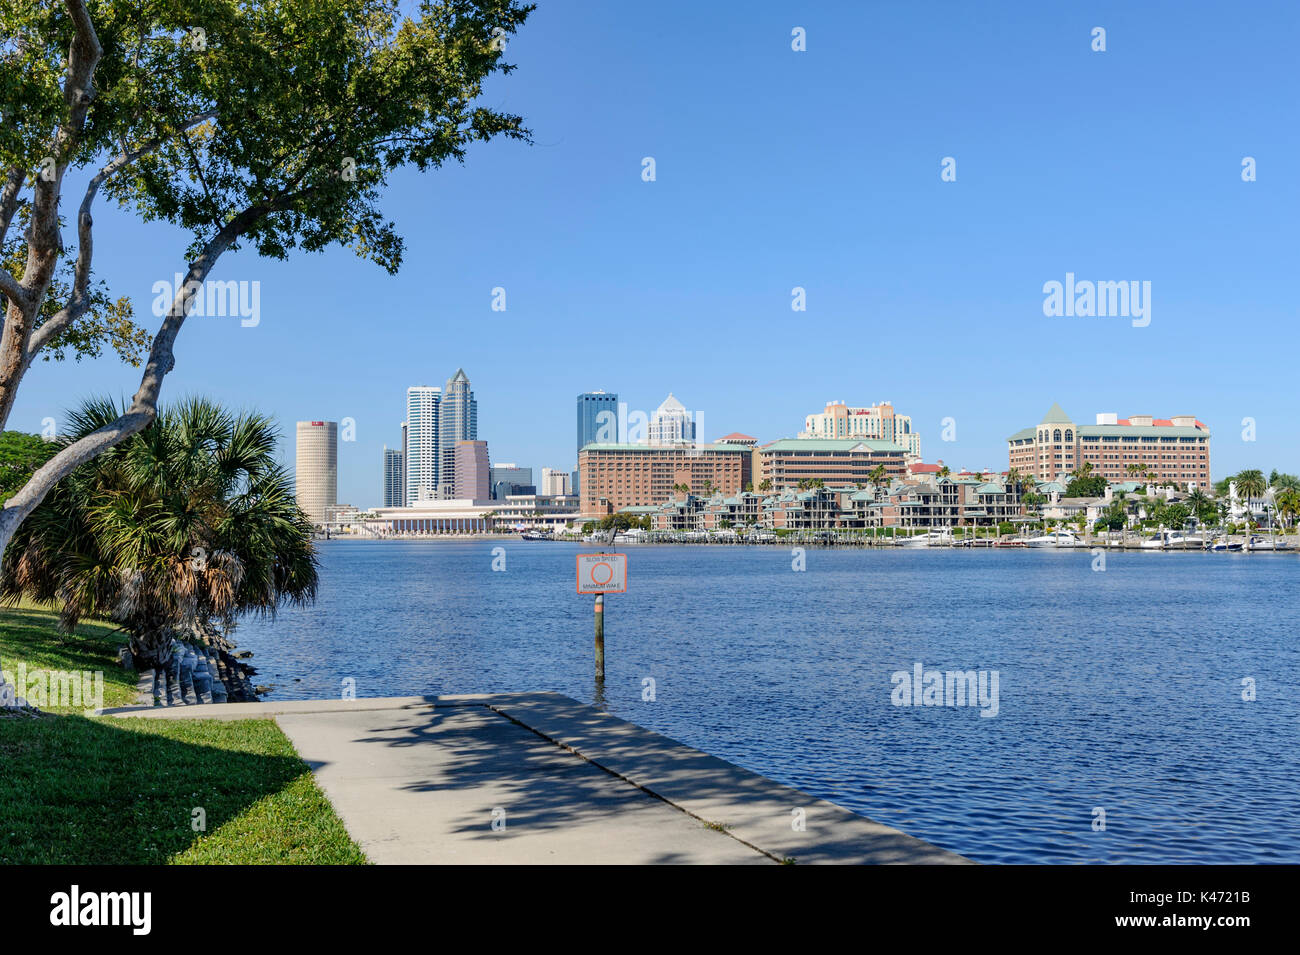 Città di Tampa Florida usa skyline con Tampa Bay in primo piano. Foto Stock